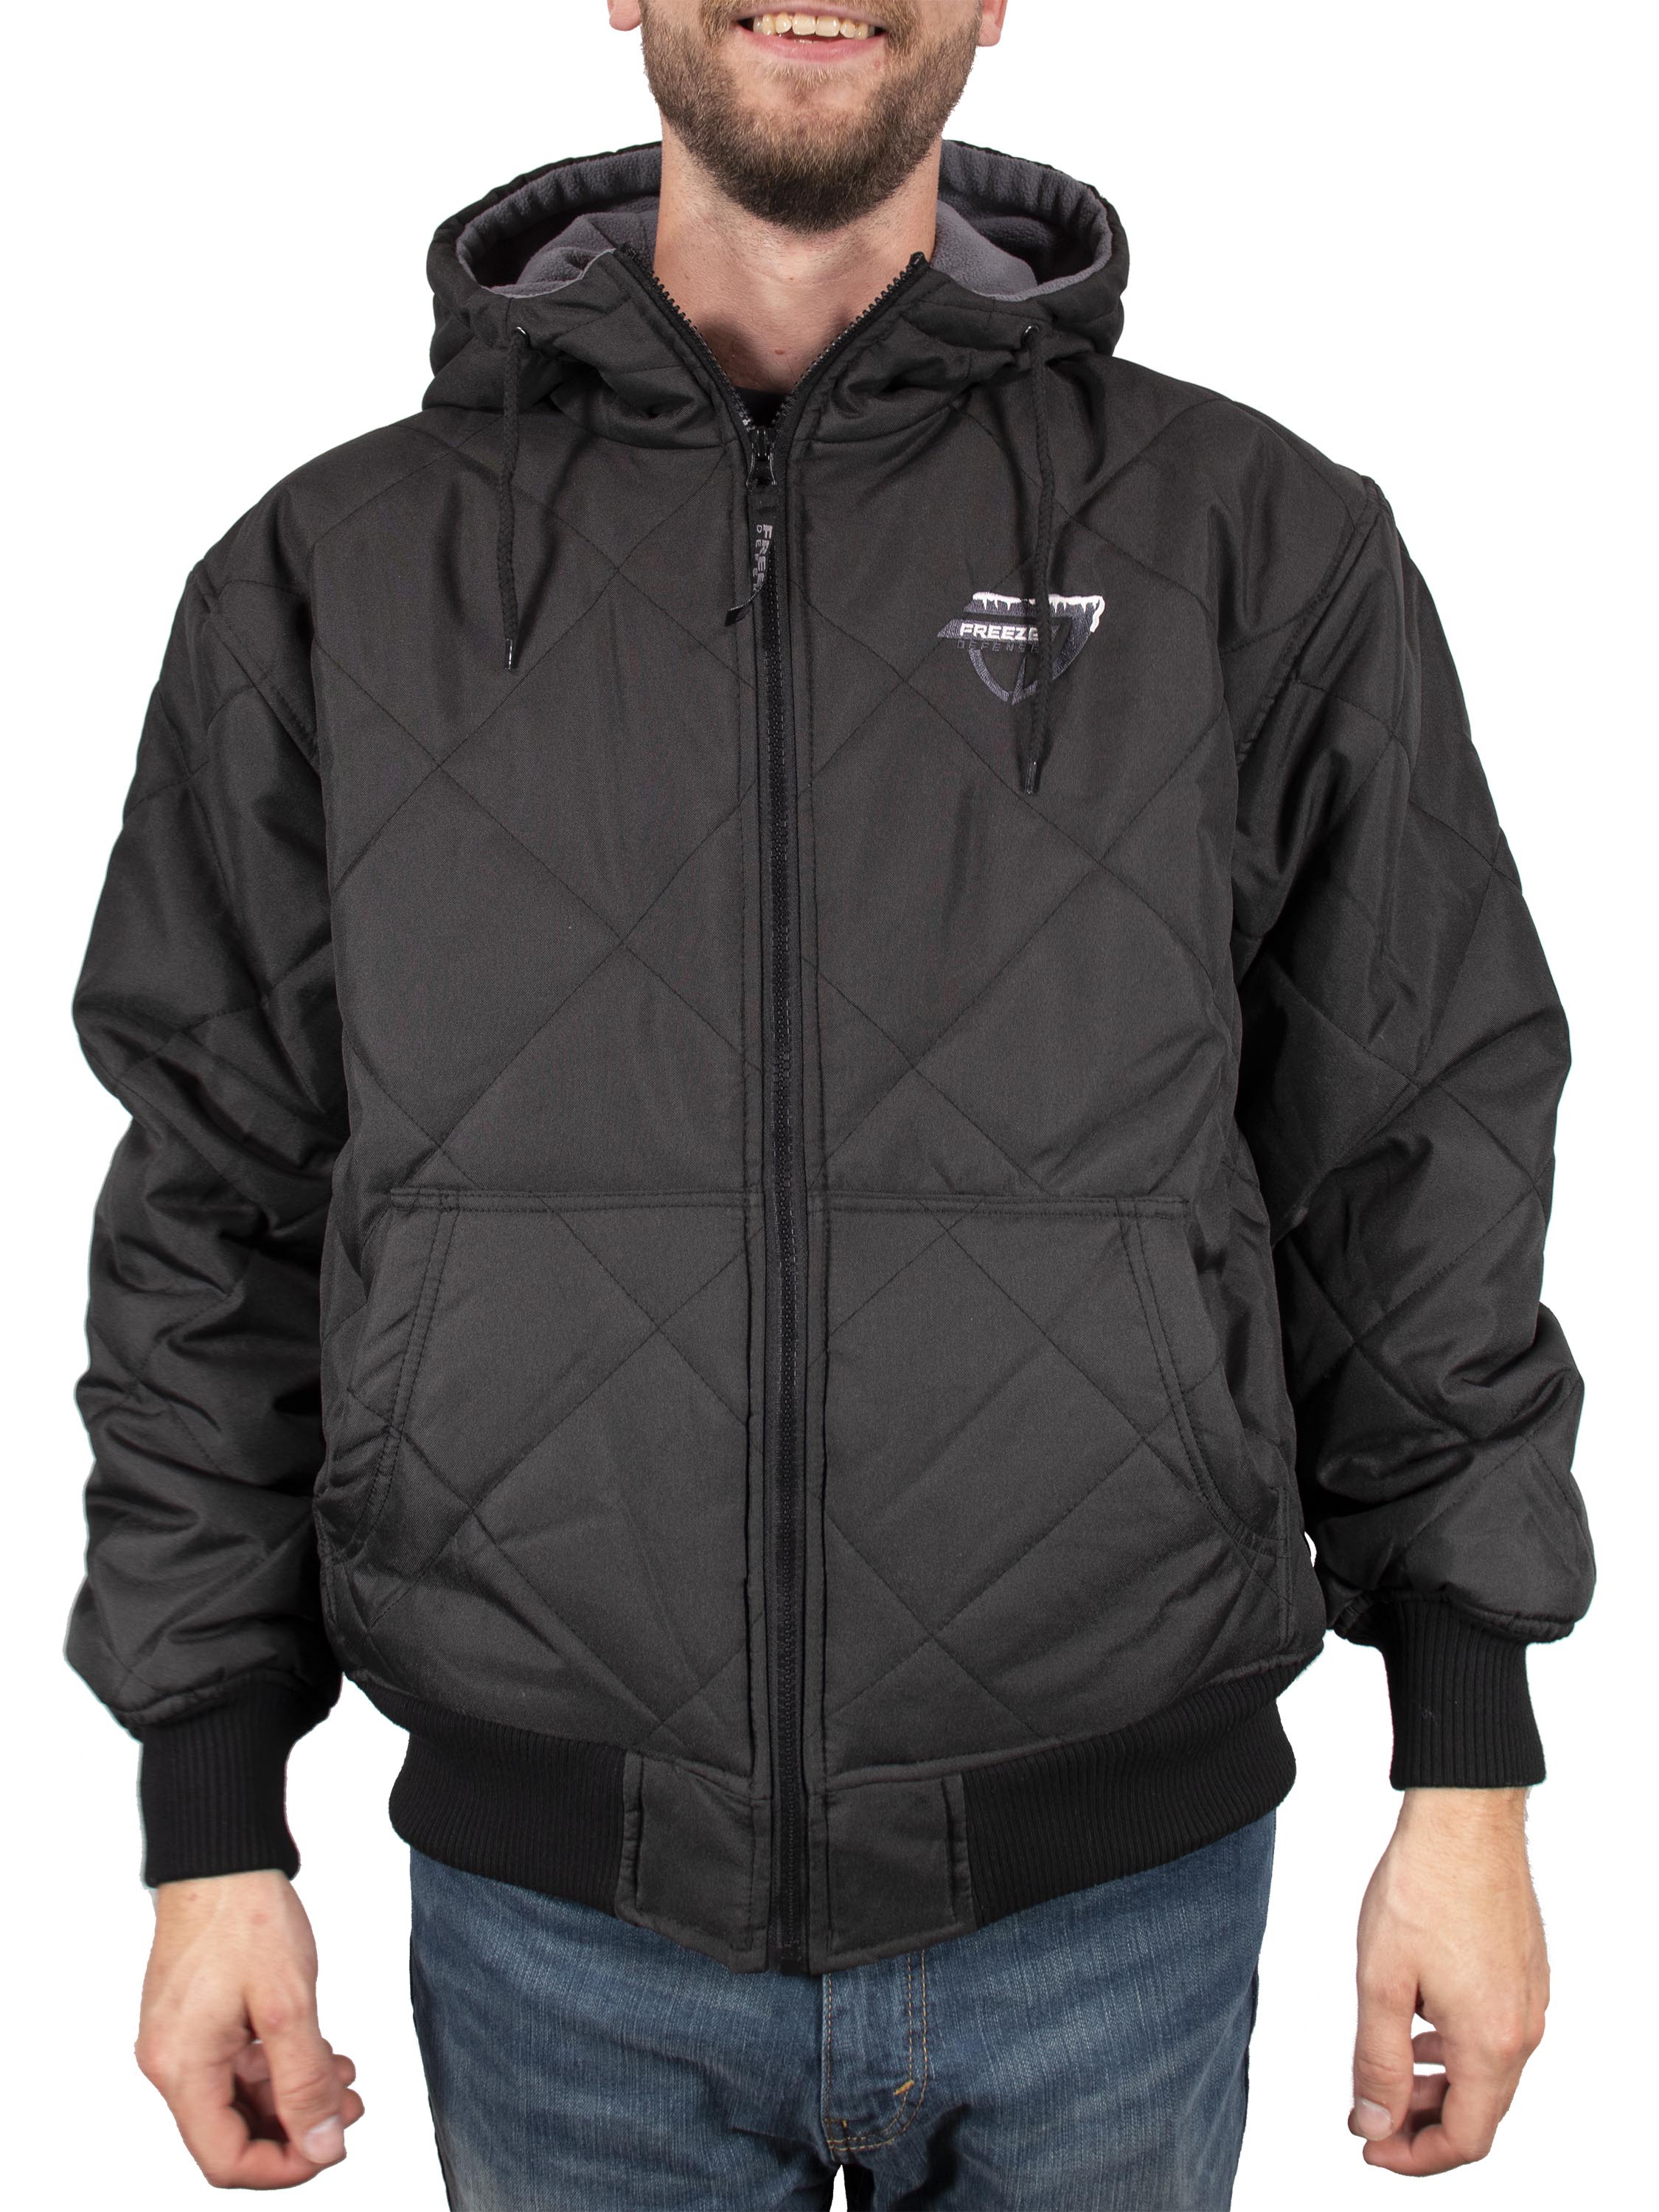 Bravepe Men Fall Winter Longline Fleece Pockets Hooded Quilted Jacket Coat Outerwear